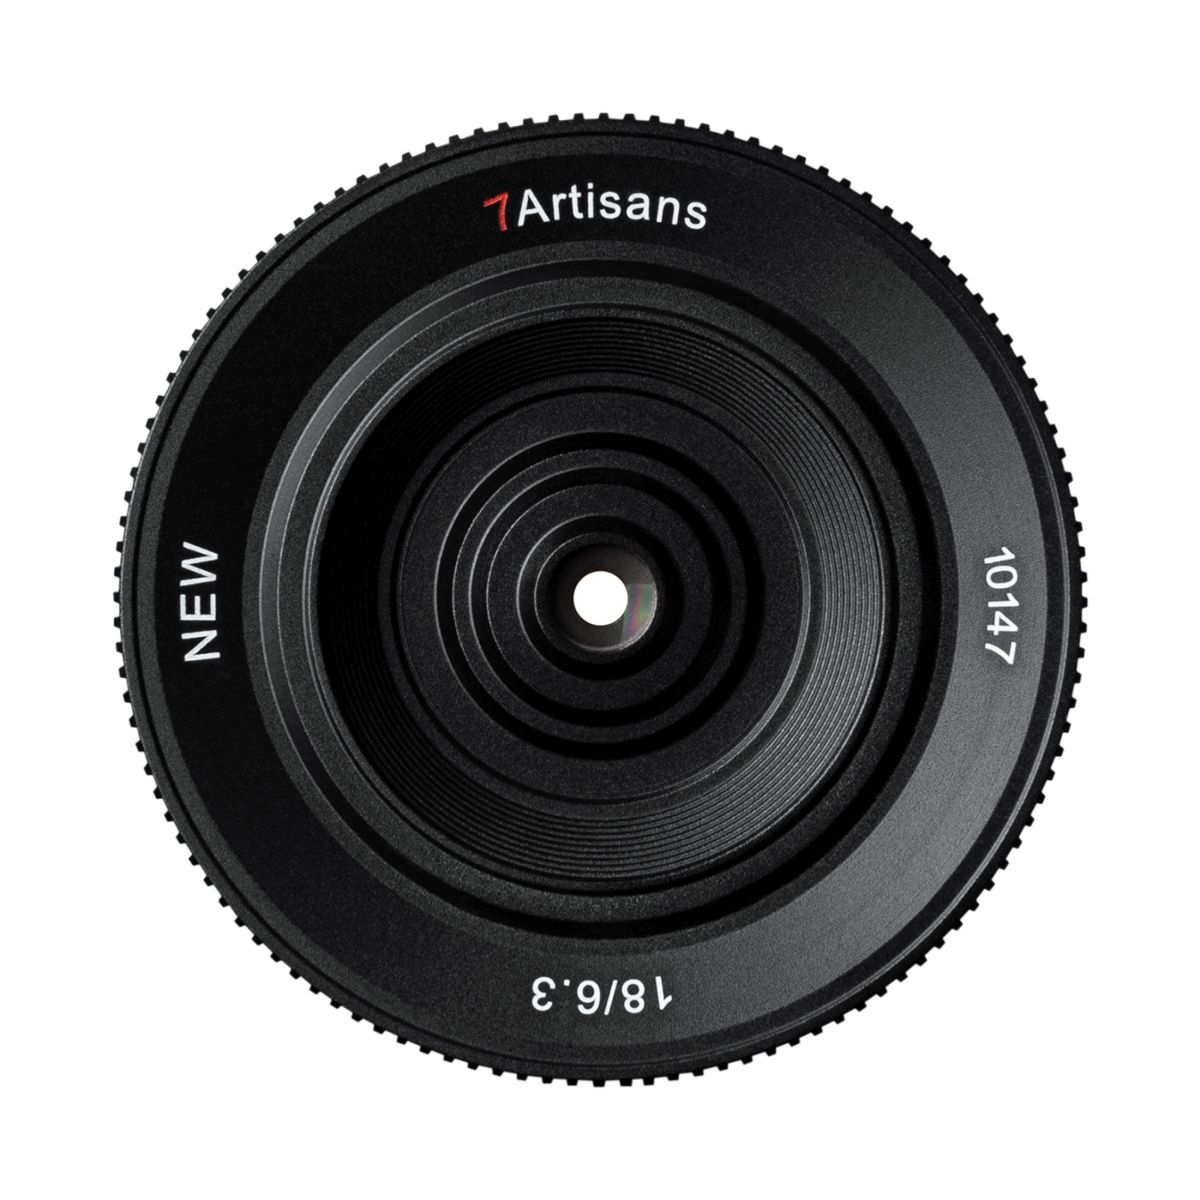 7Artisans 18 mm 1:6,3 II für Nikon Z (APS-C)